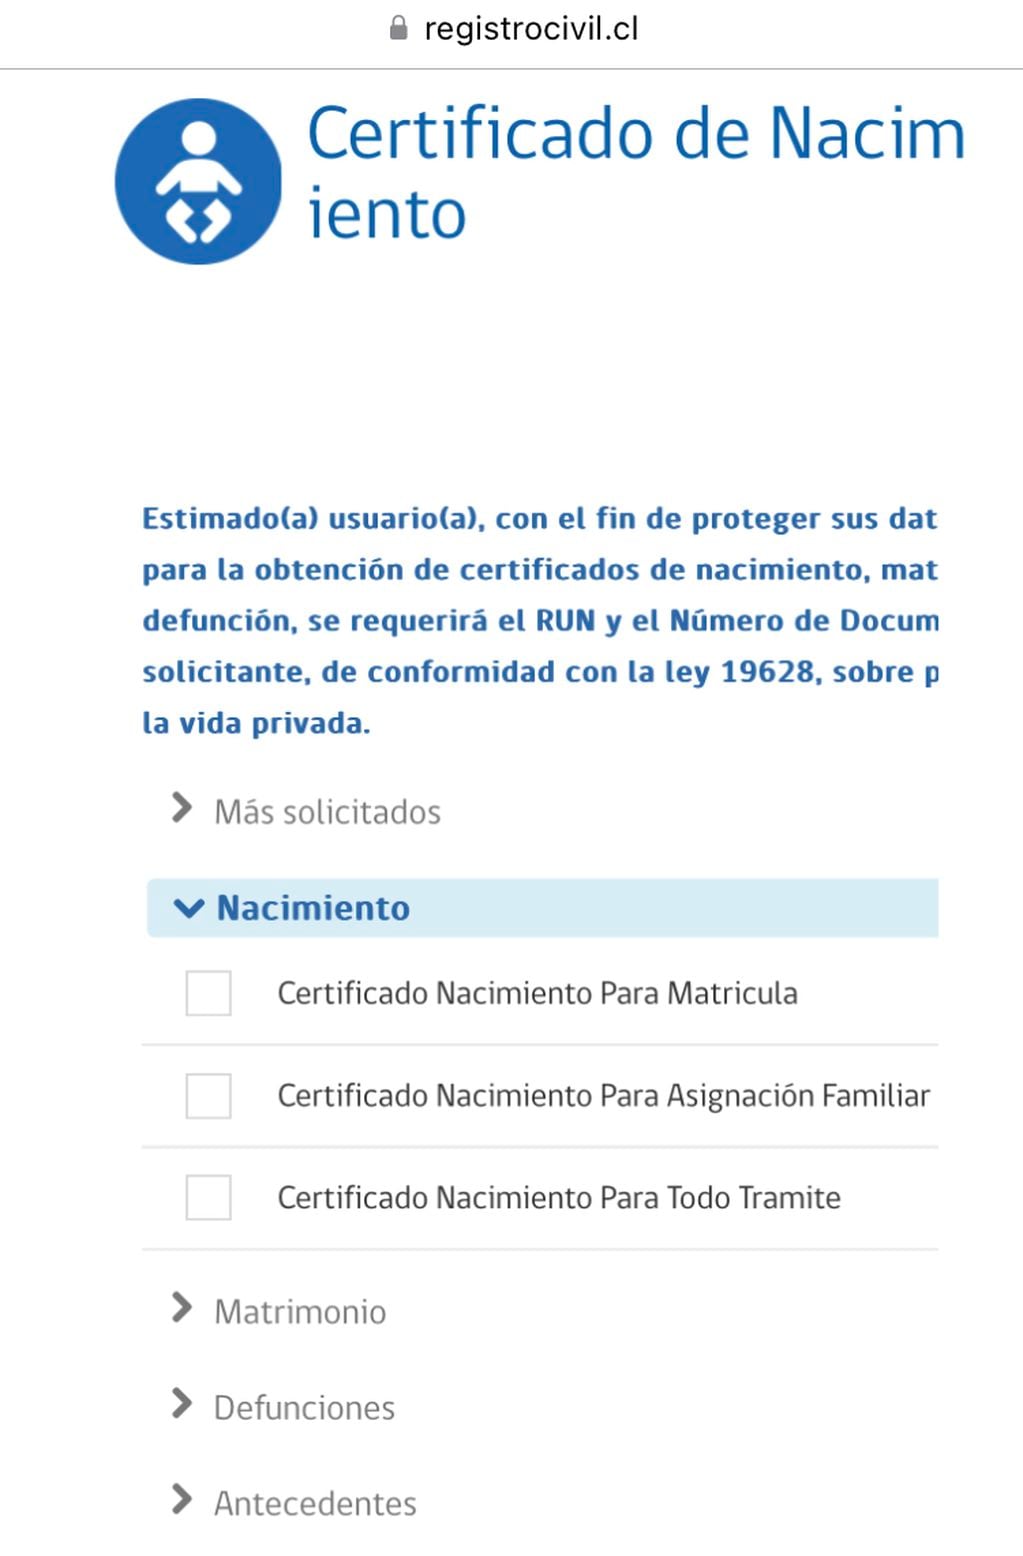 Sitio del Registro Civil para obtener el certificado de nacimiento.